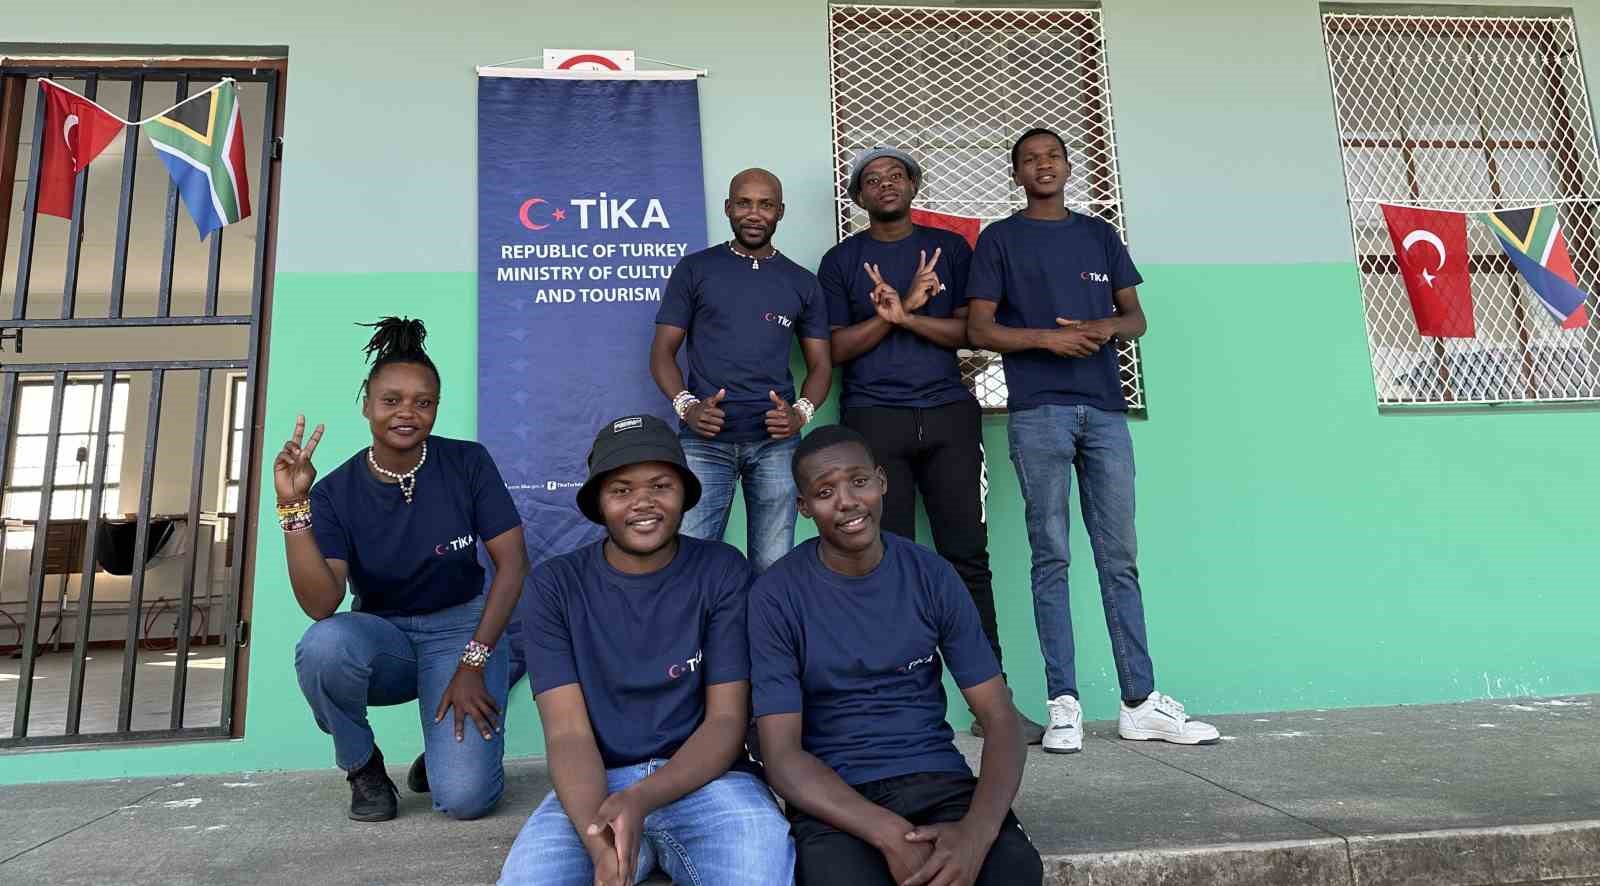 TİKA, Güney Afrika’da Kuyumculuk ve Takı Tasarım Meslek Okulu projesini hayata geçirdi
